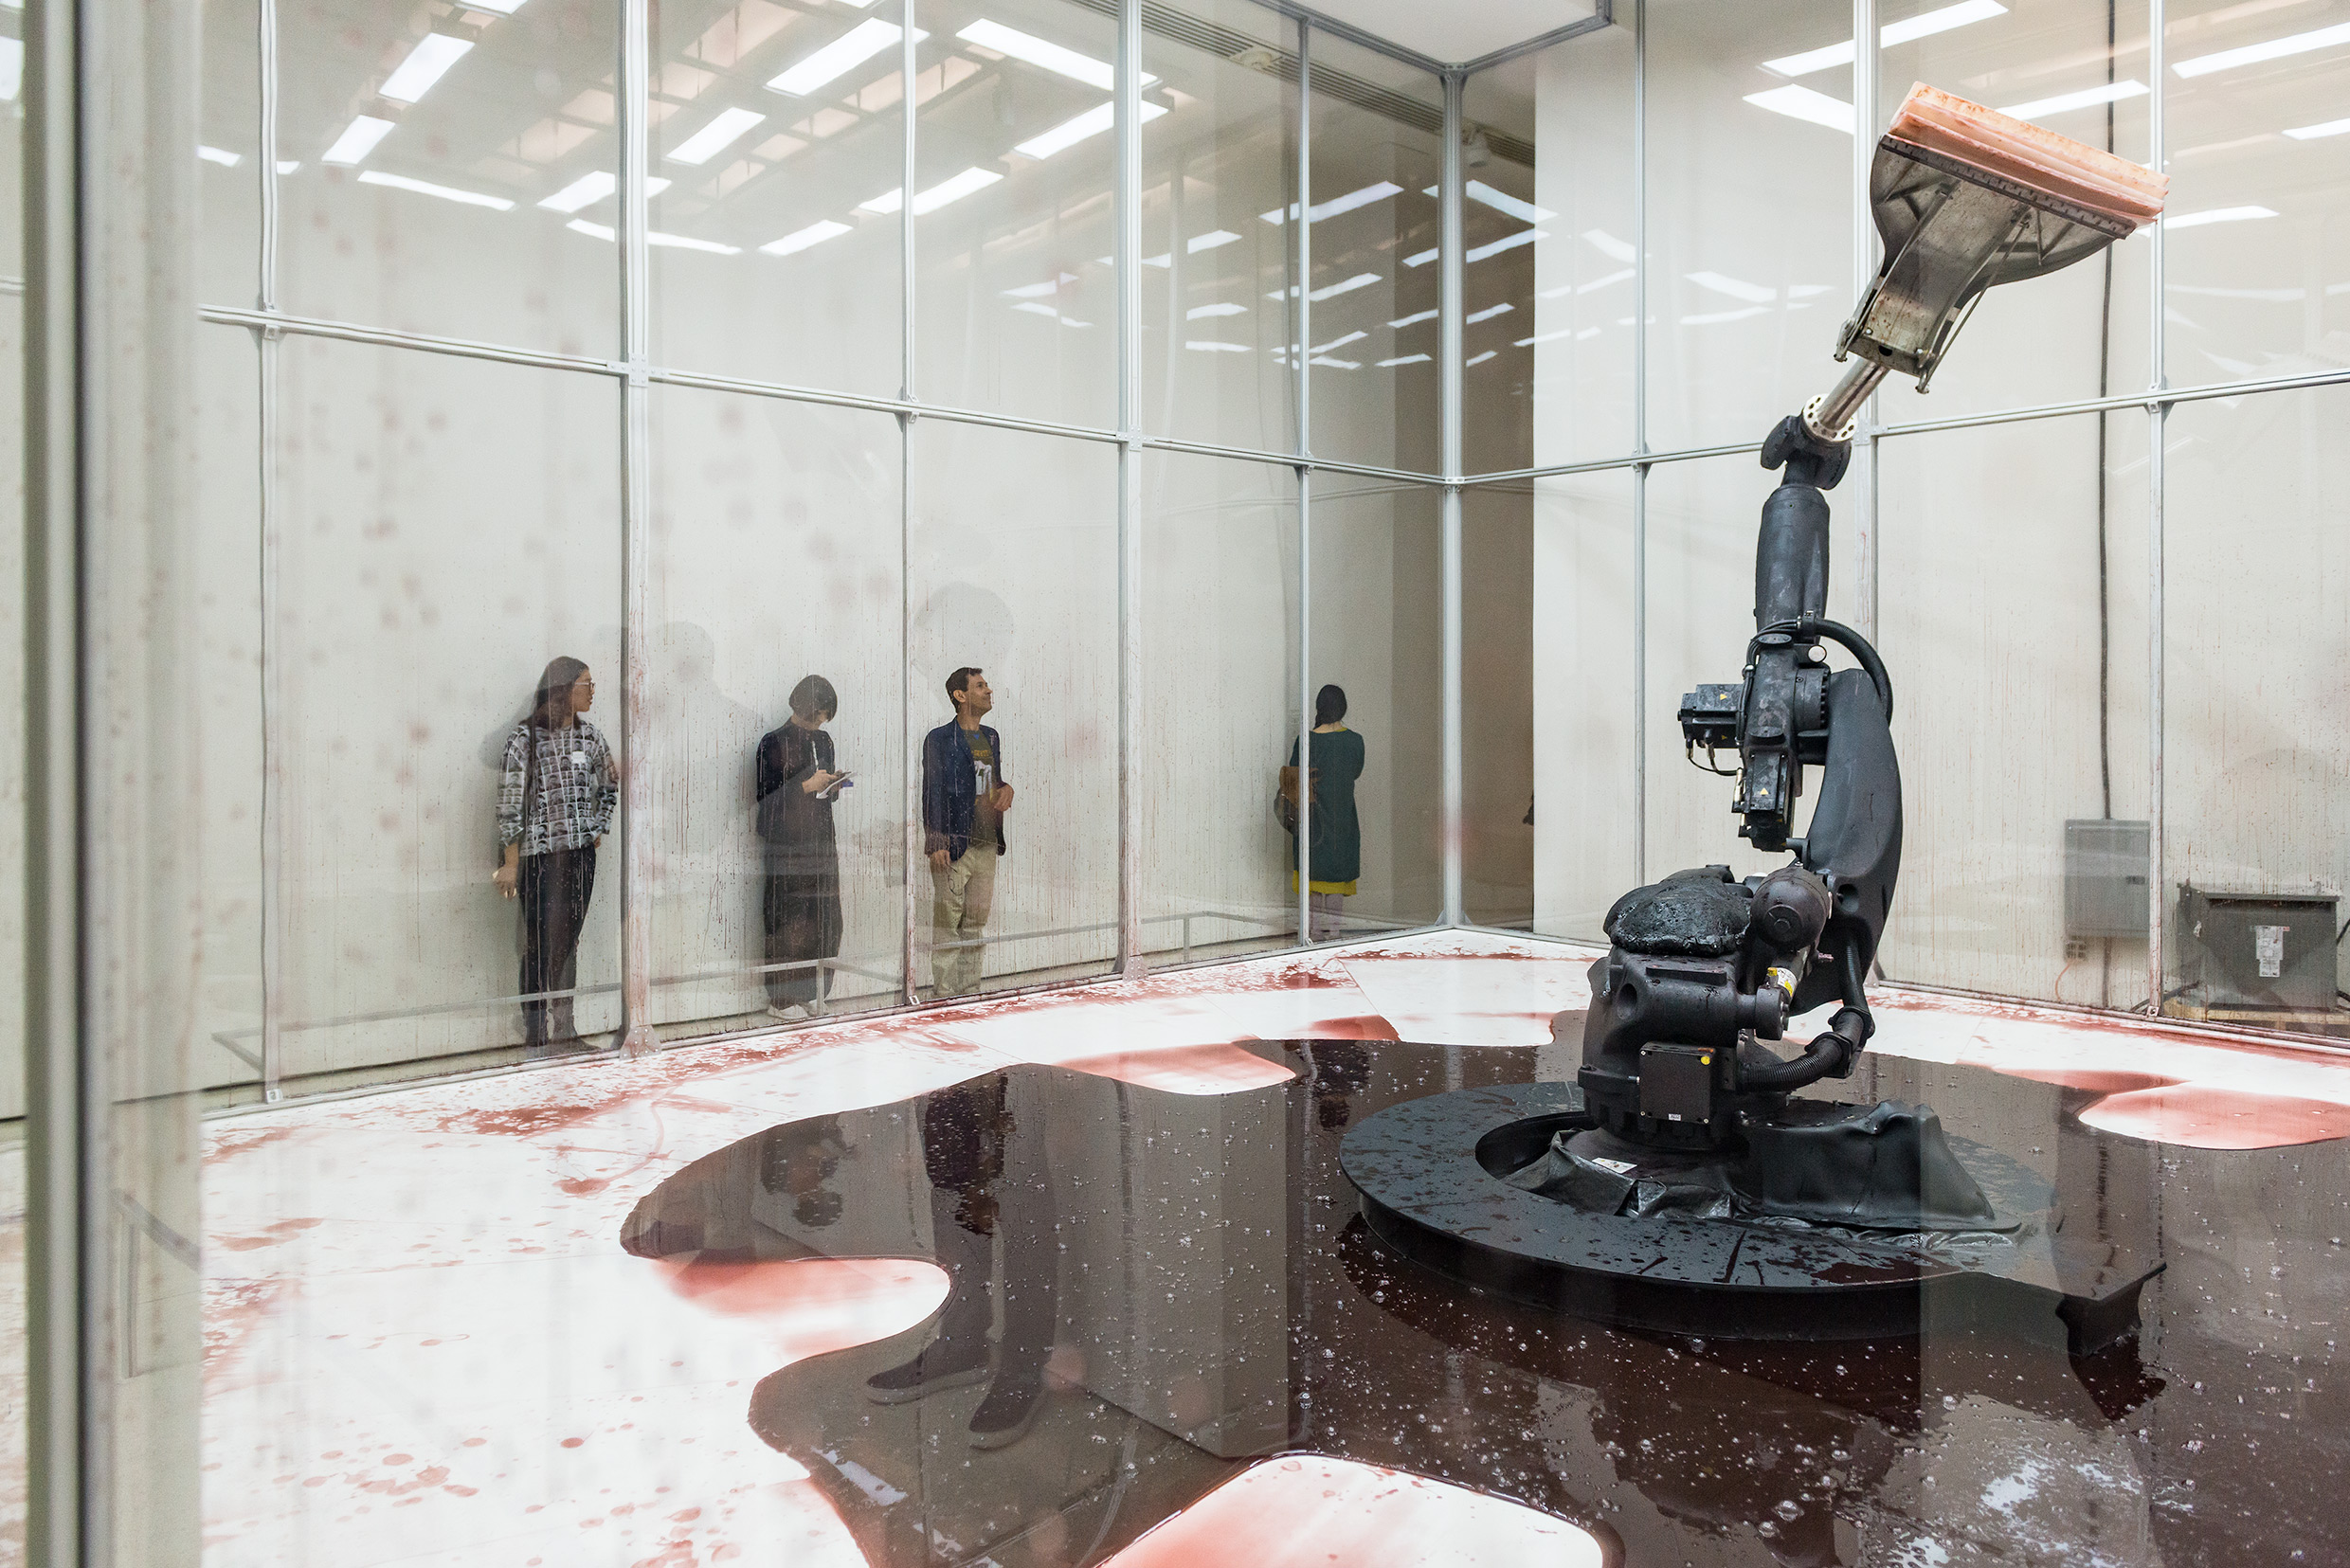 Paul the robot – Installation arts et sciences